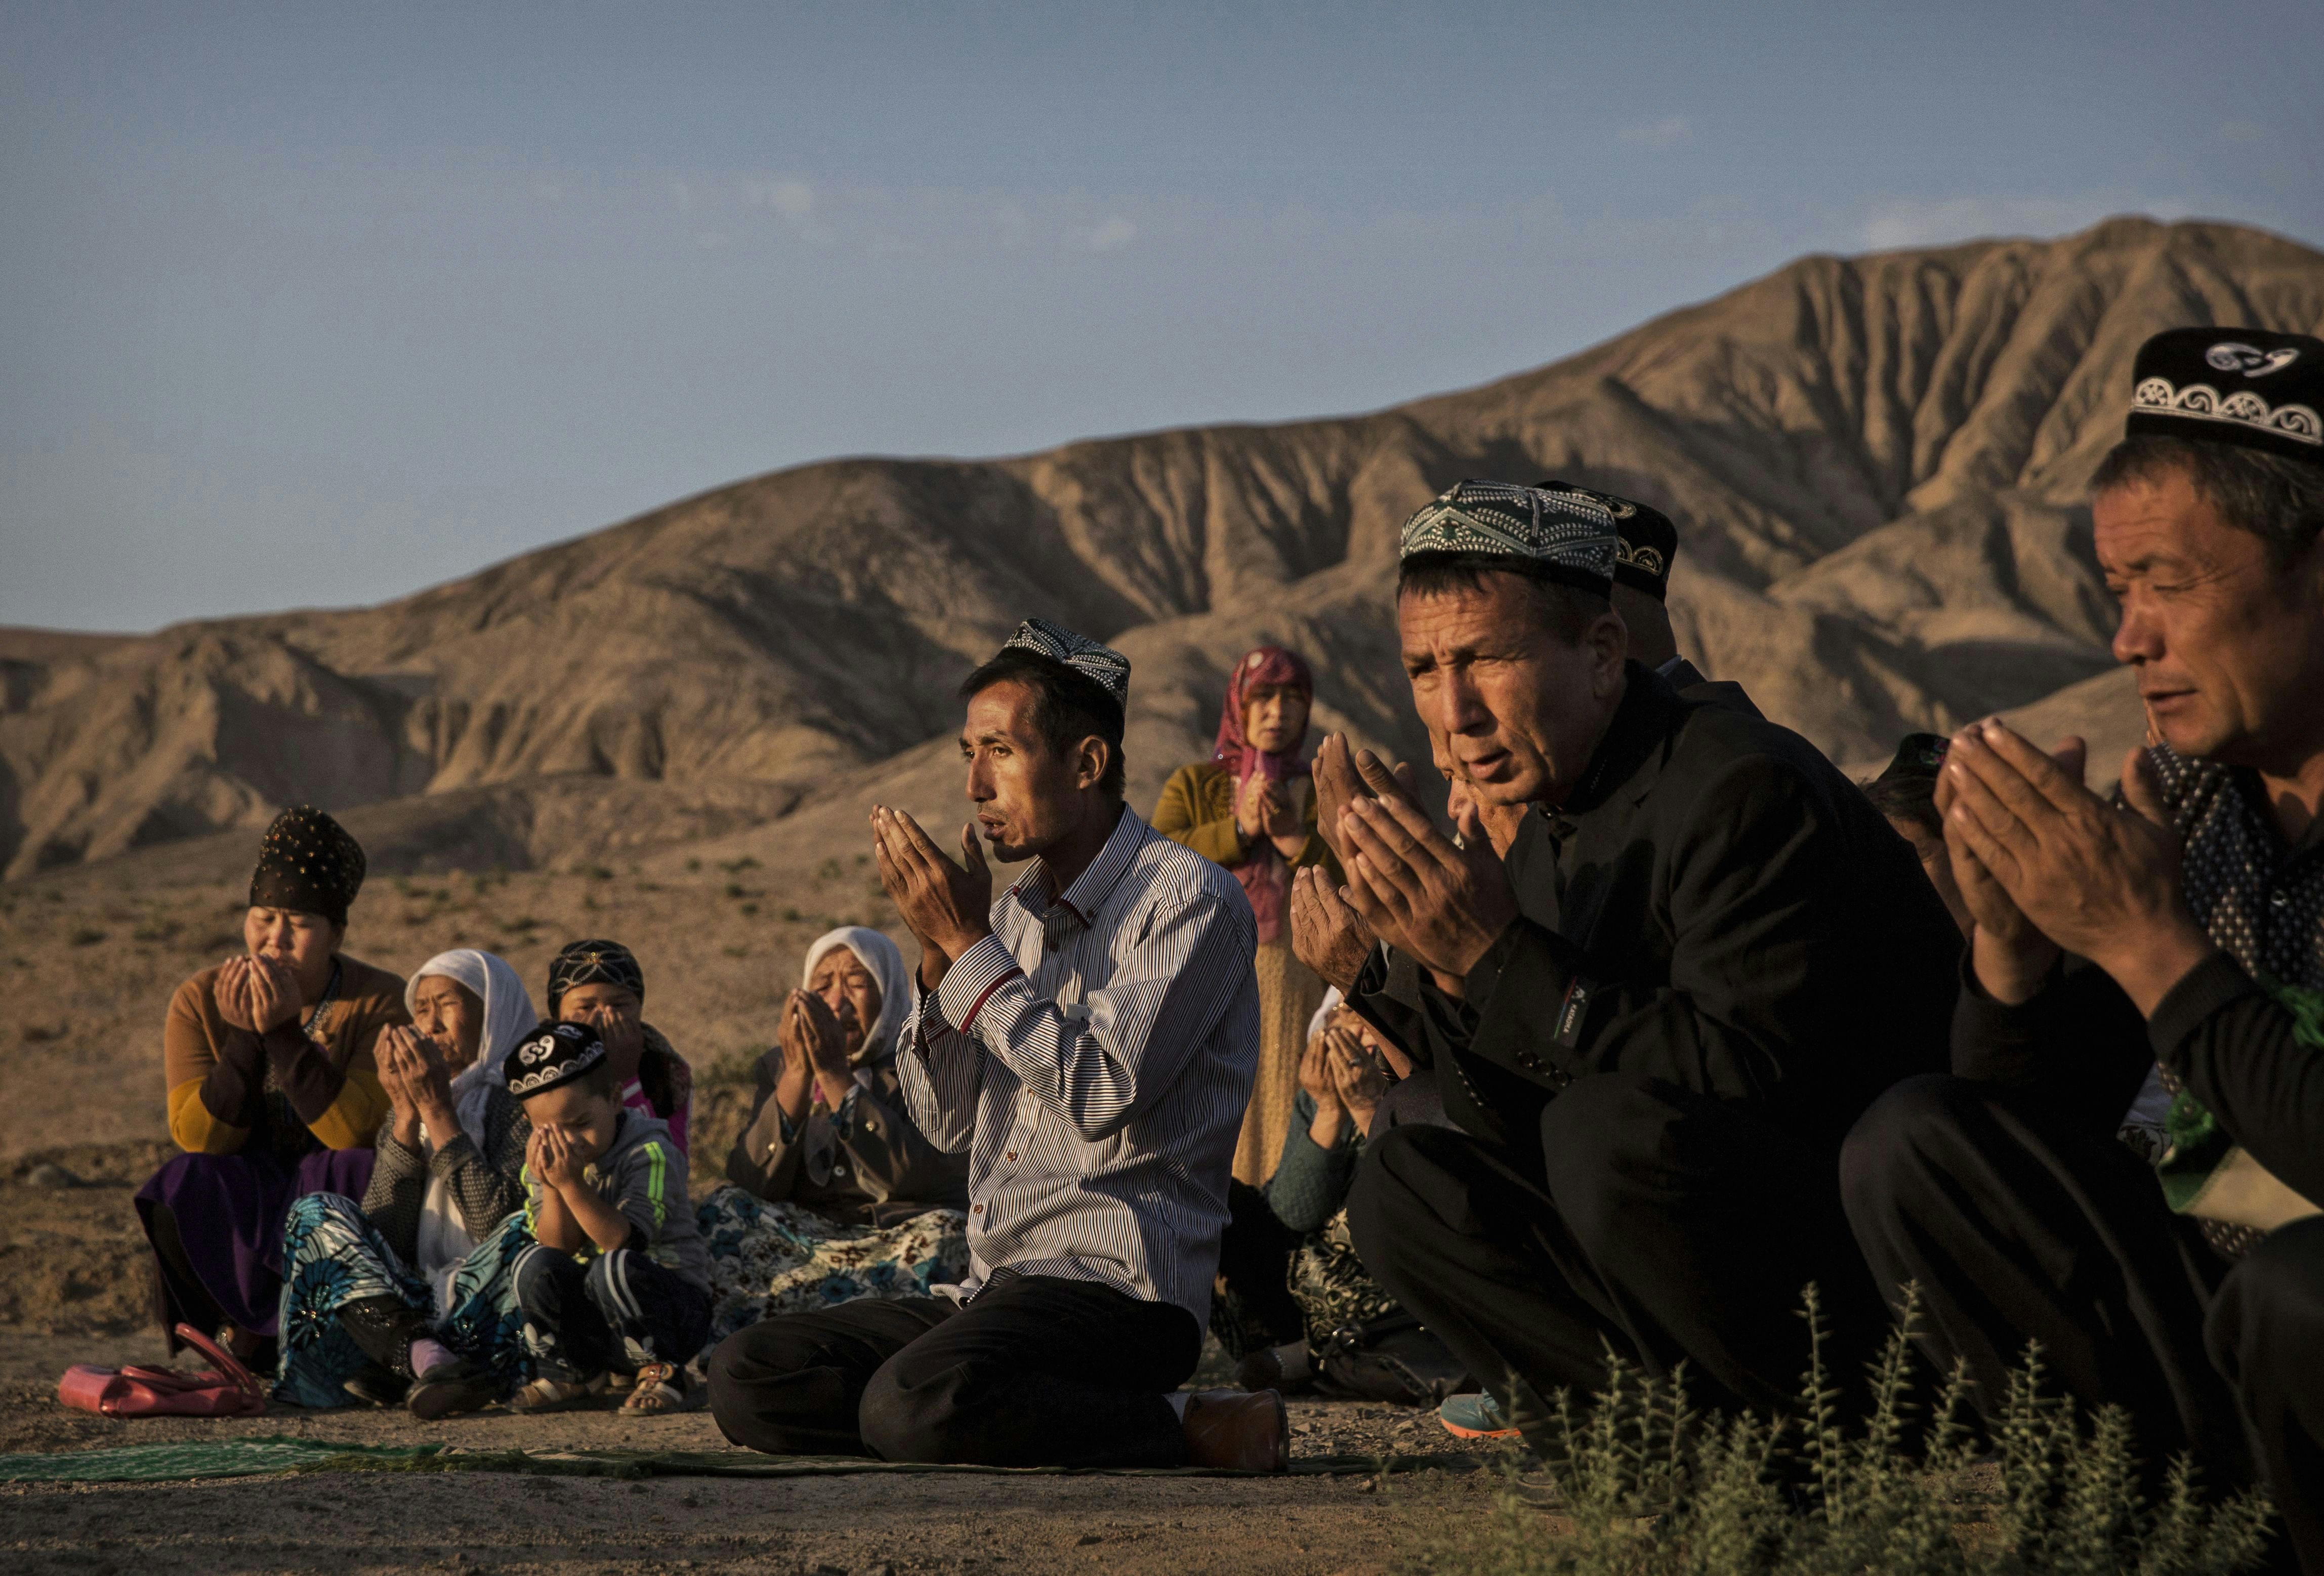 تورپان، چین - 12 سپتامبر: (خارج از چین) یک خانواده اویغور در صبح جشن کوربان در 12 سپتامبر 2016 در یک زیارتگاه و گورستان محلی در شهرستان تورپان، در غرب استان سین کیانگ، چین، بر سر مزار یکی از عزیزان خود دعا می کنند. .  قربان که برای مسلمانان سراسر جهان به عنوان عید قربان یا 